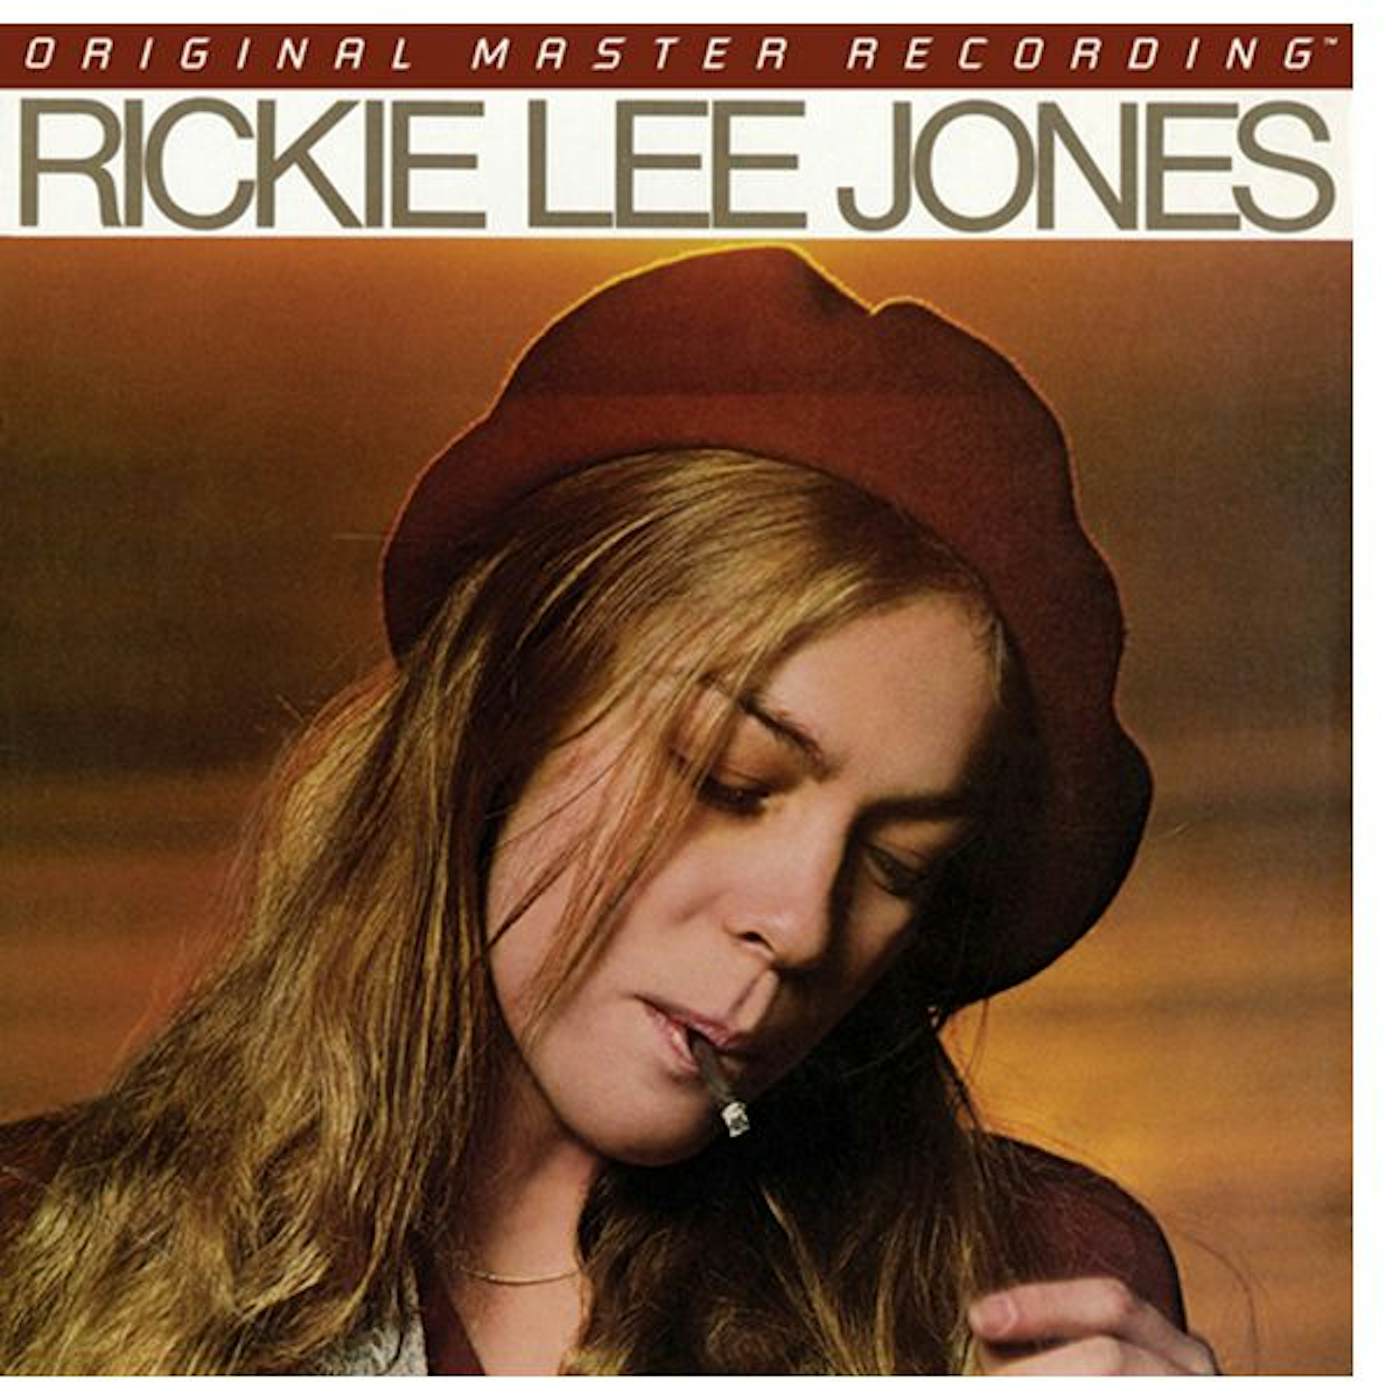 Rickie Lee Jones Vinyl Record